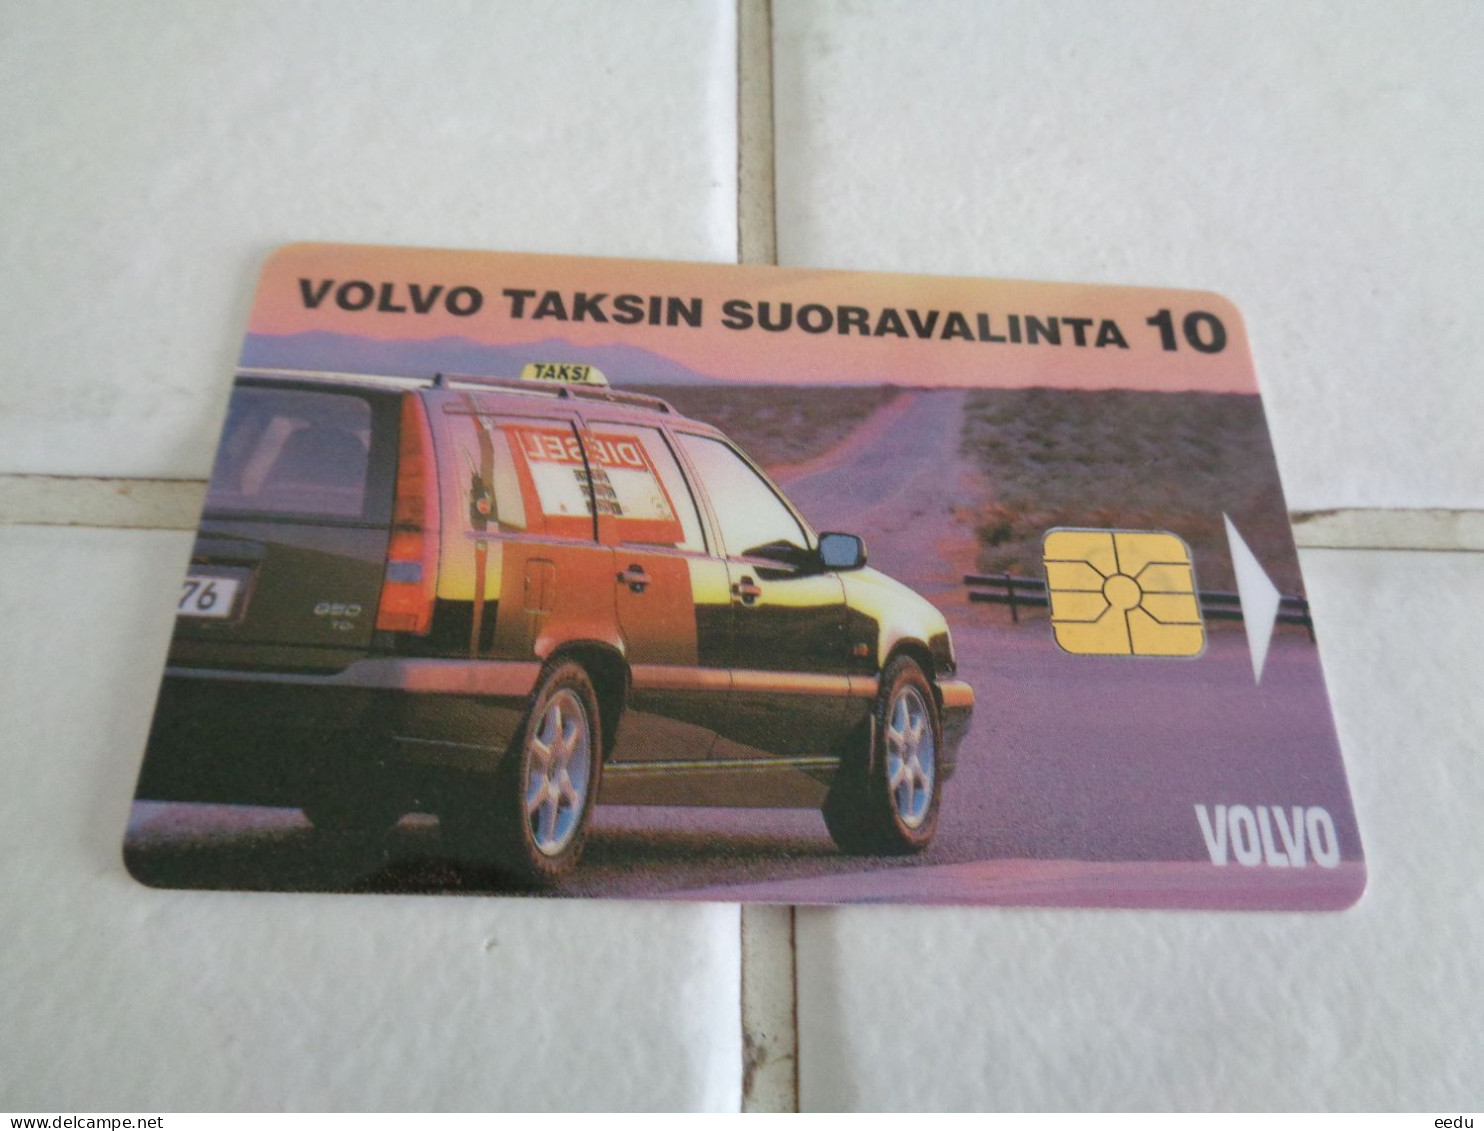 Finland Phonecard Tele Y1 - Finnland